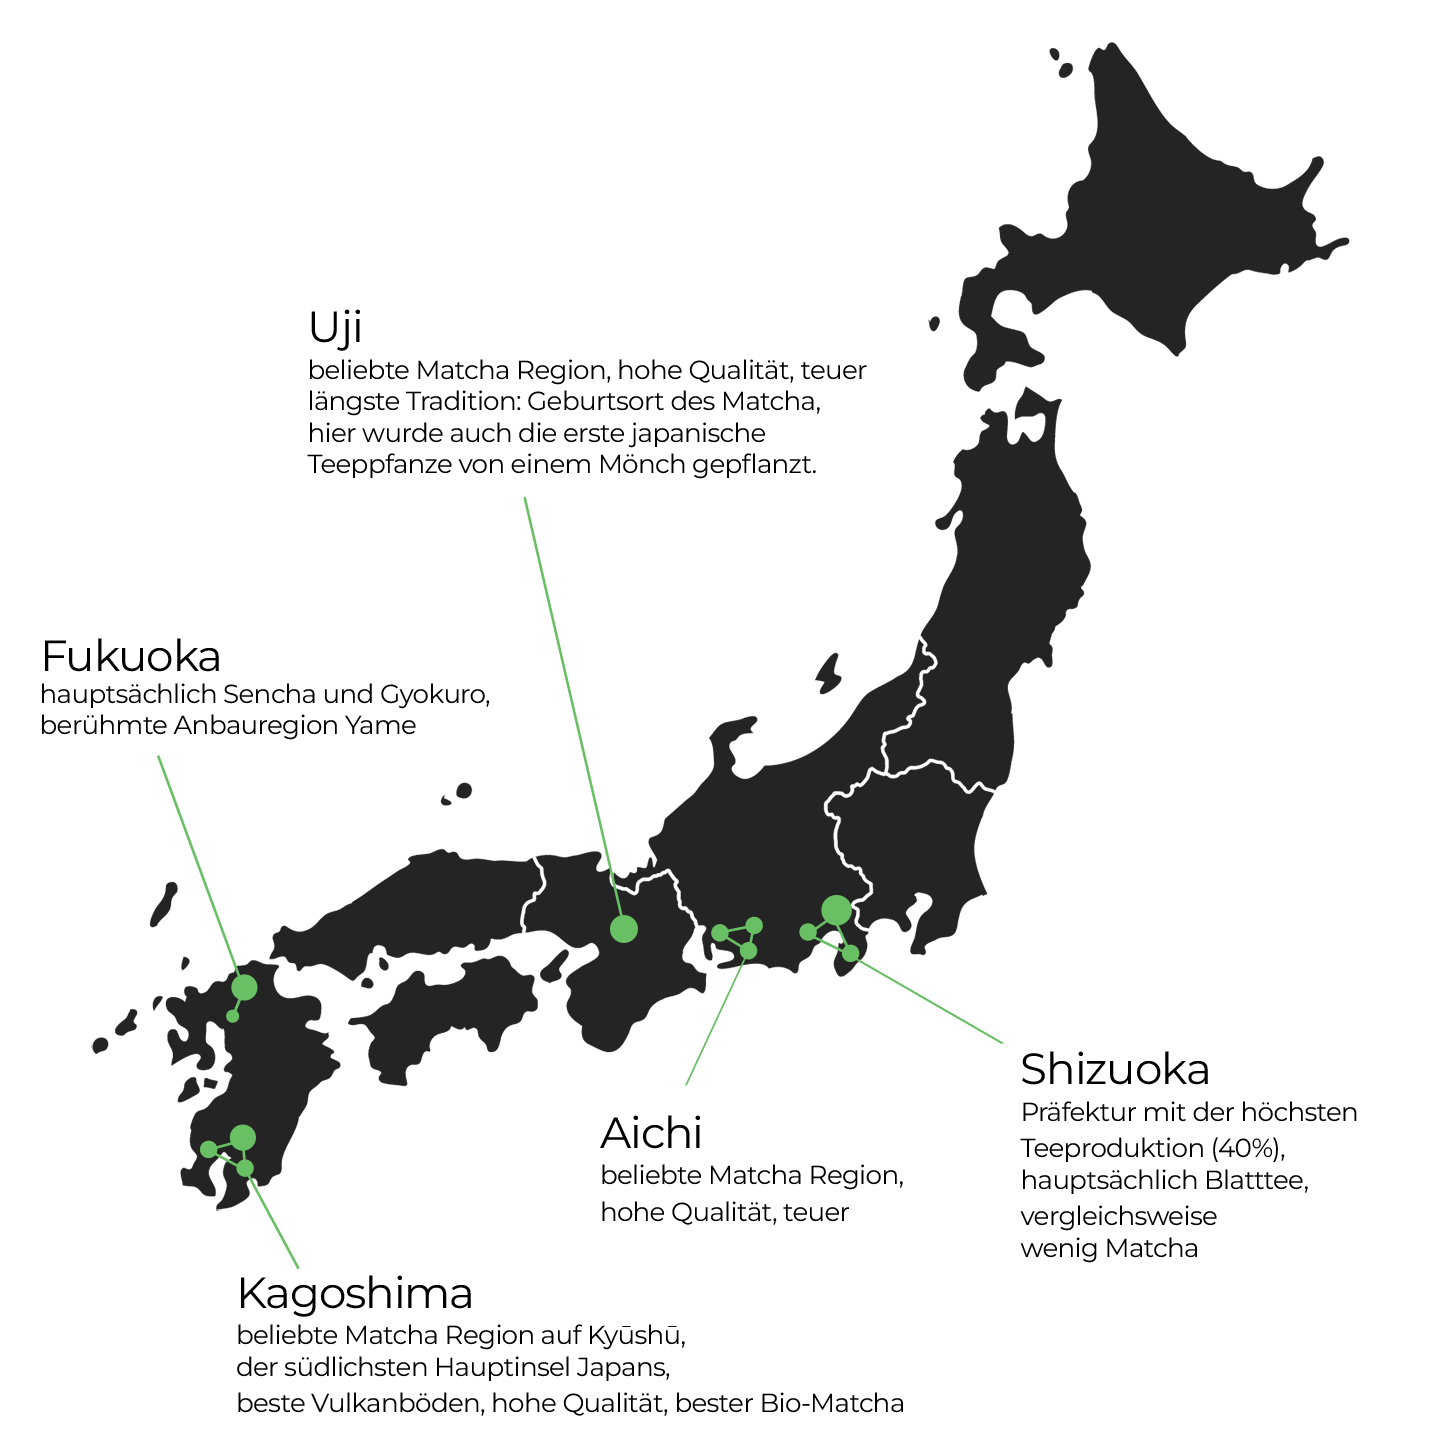 Karte von Japan: Aus diesen Regionen kommt der beste Matcha, Kagoshima, Aichi, Uji